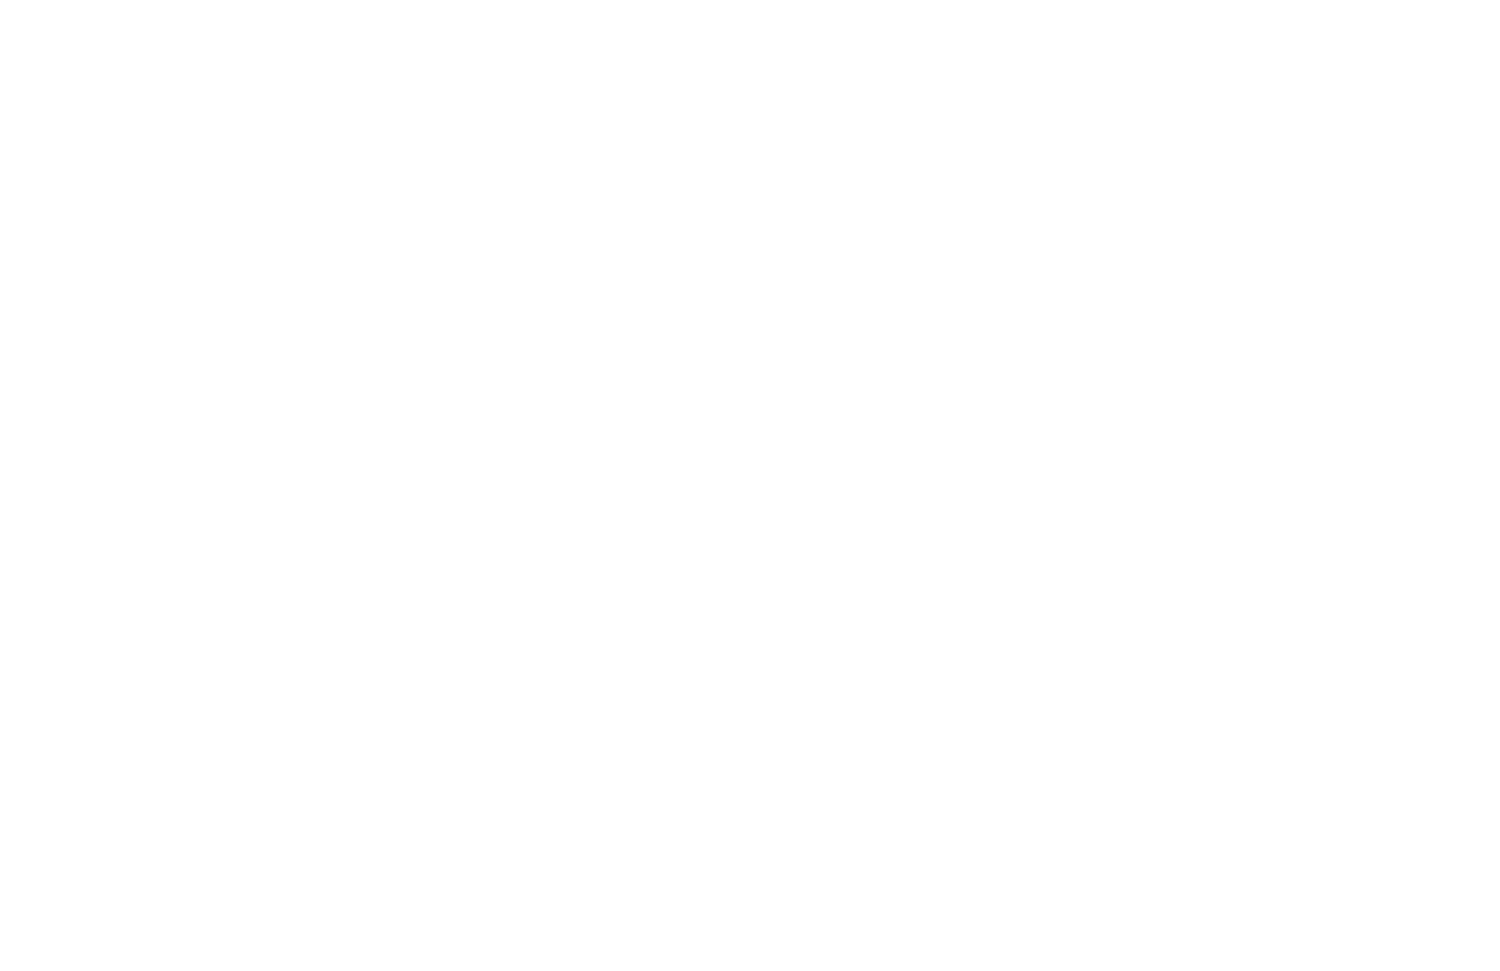 Cass Construction